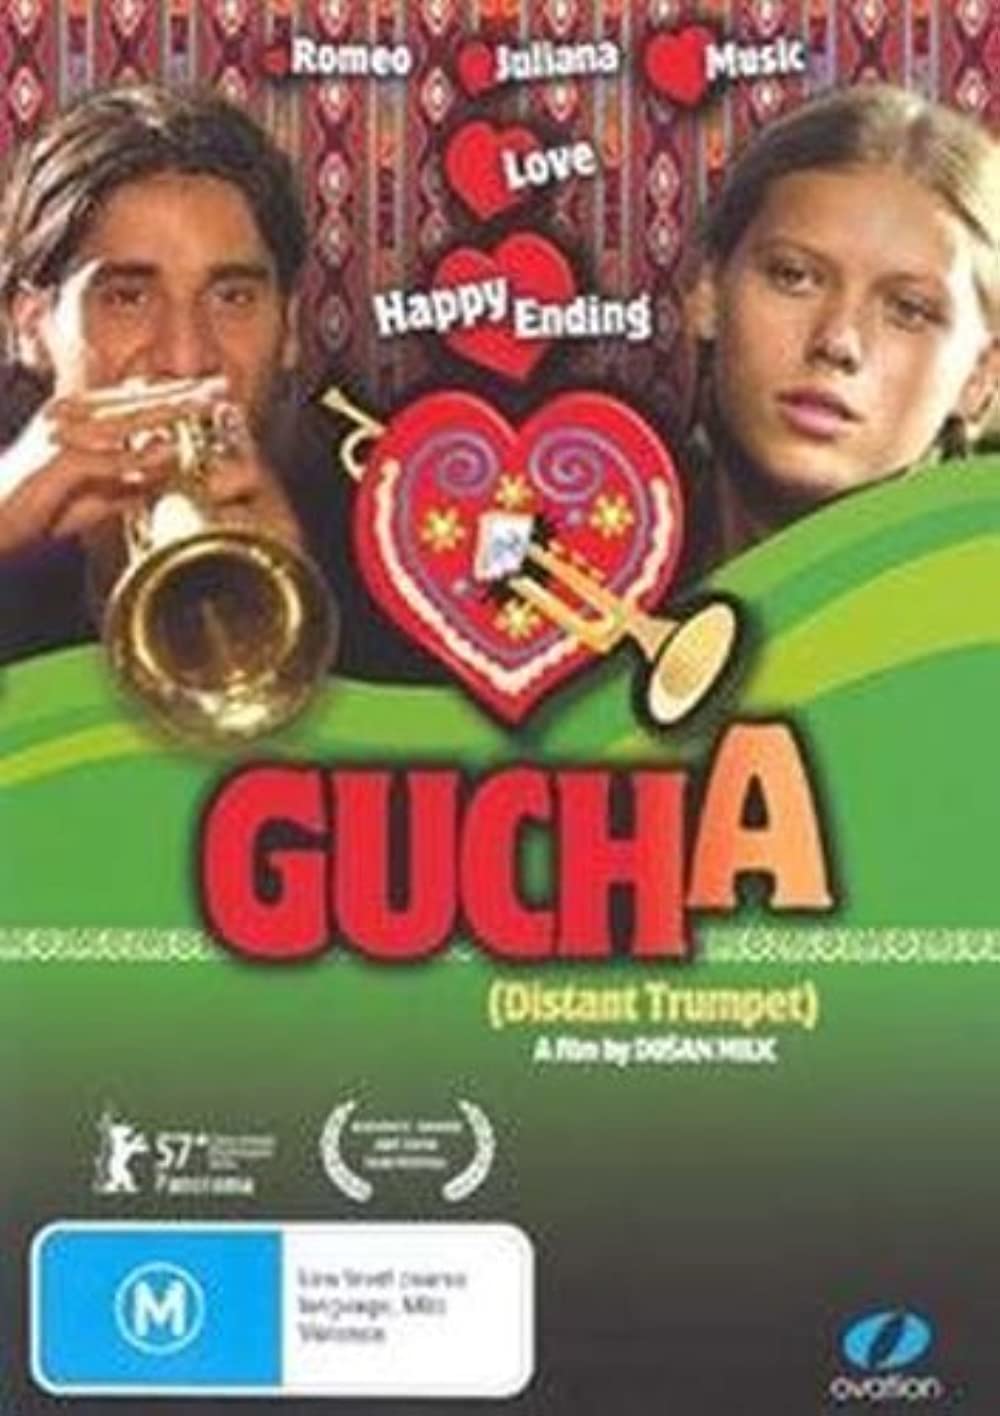 Filmbeschreibung zu Gucha